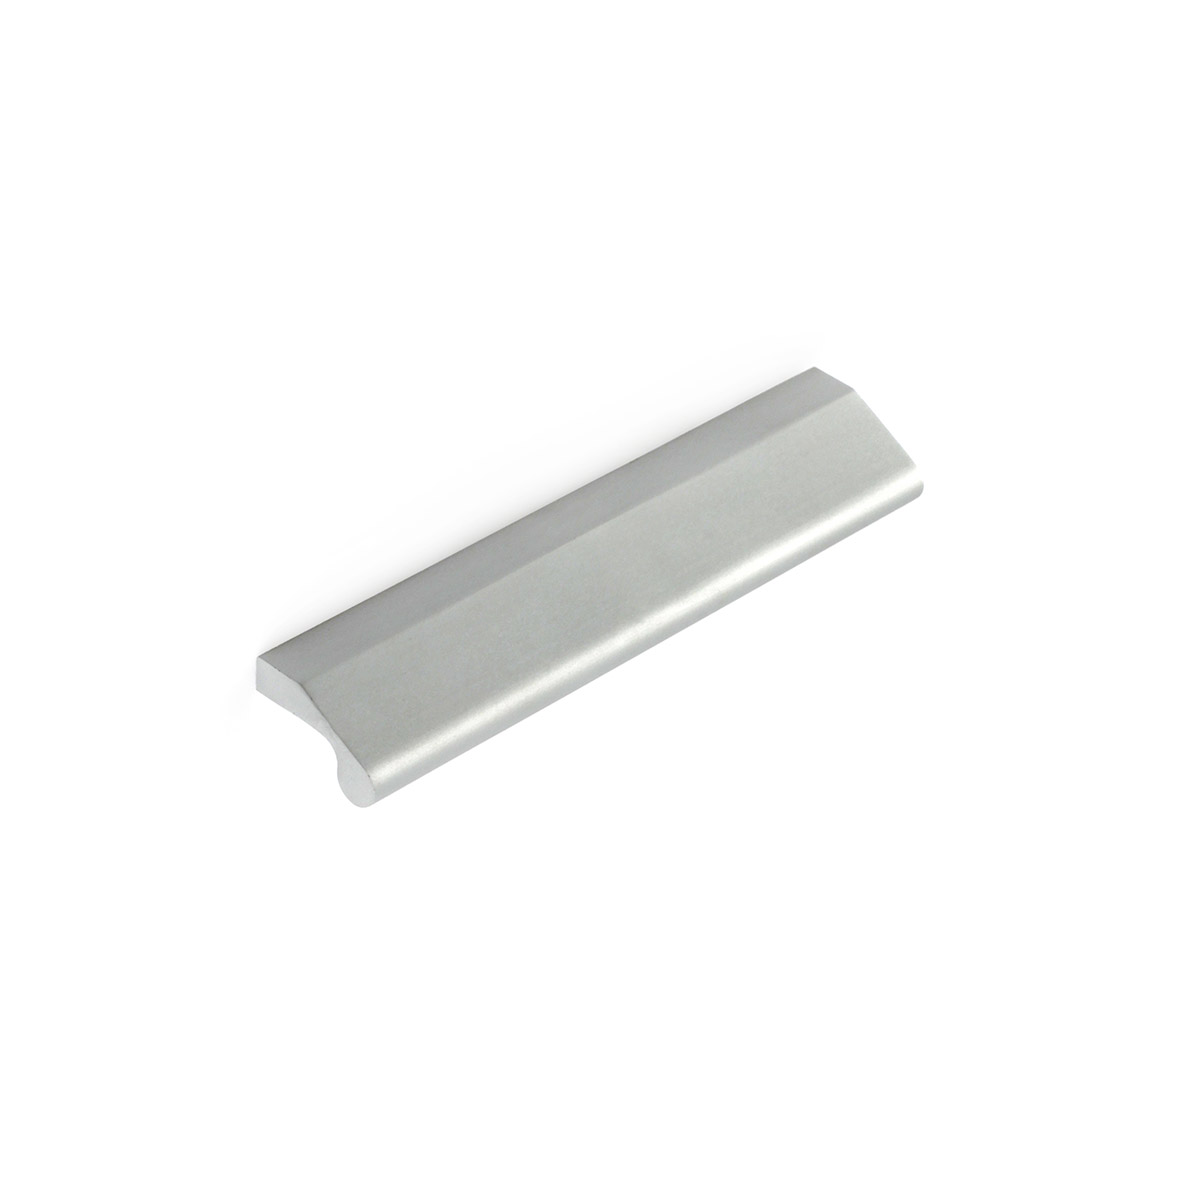 Asa de aluminio con acabado anodizado mate, dimensiones:120x15x26mm y entrepuntos:96mm